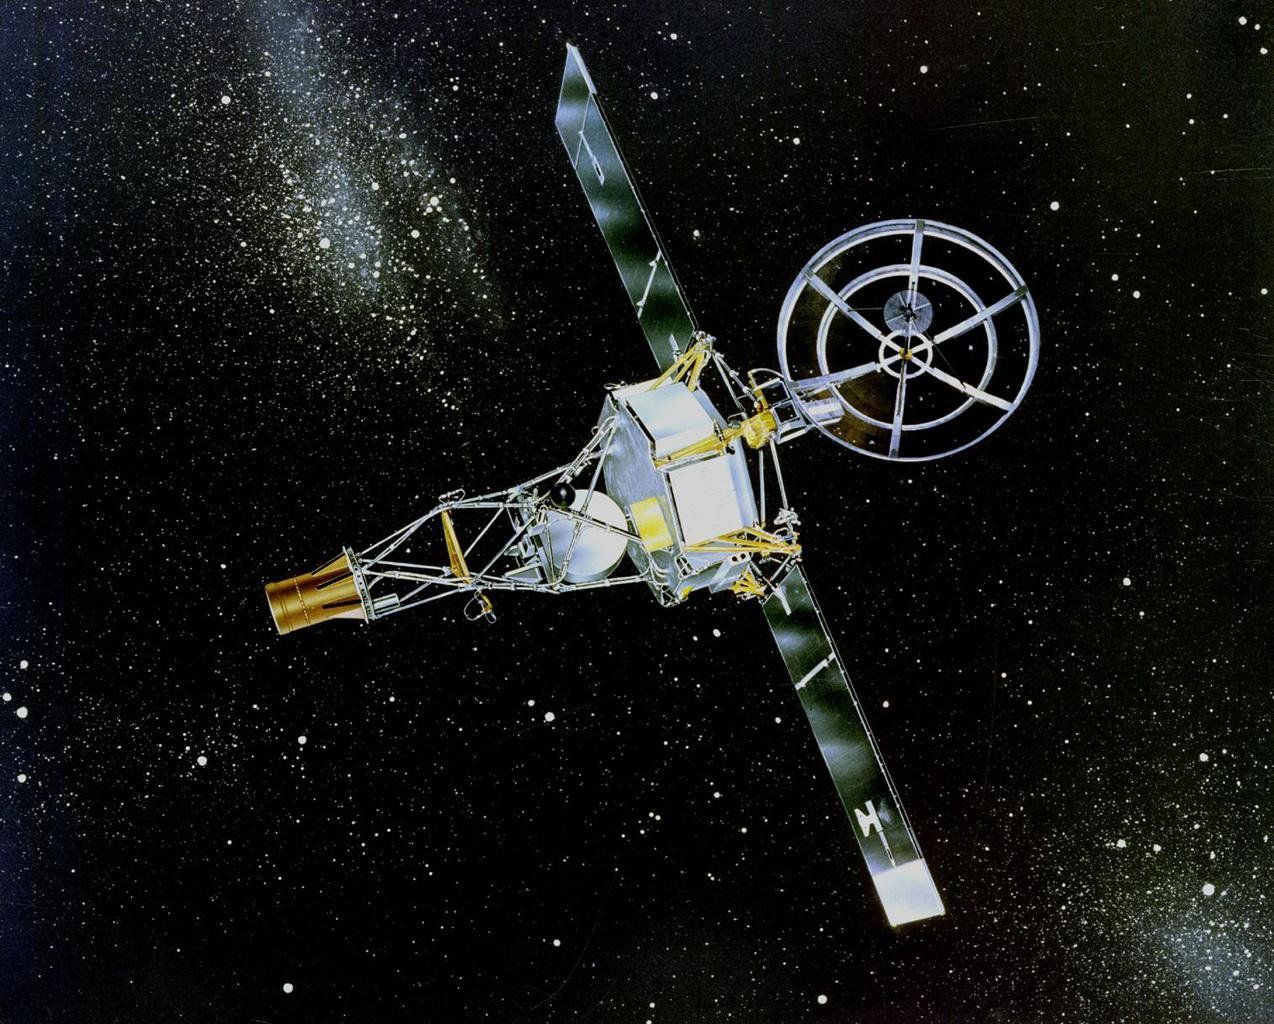 1962 fliegt die Venus-Sonde Mariner 2 als erster Roboter an einem Planeten vorbei.